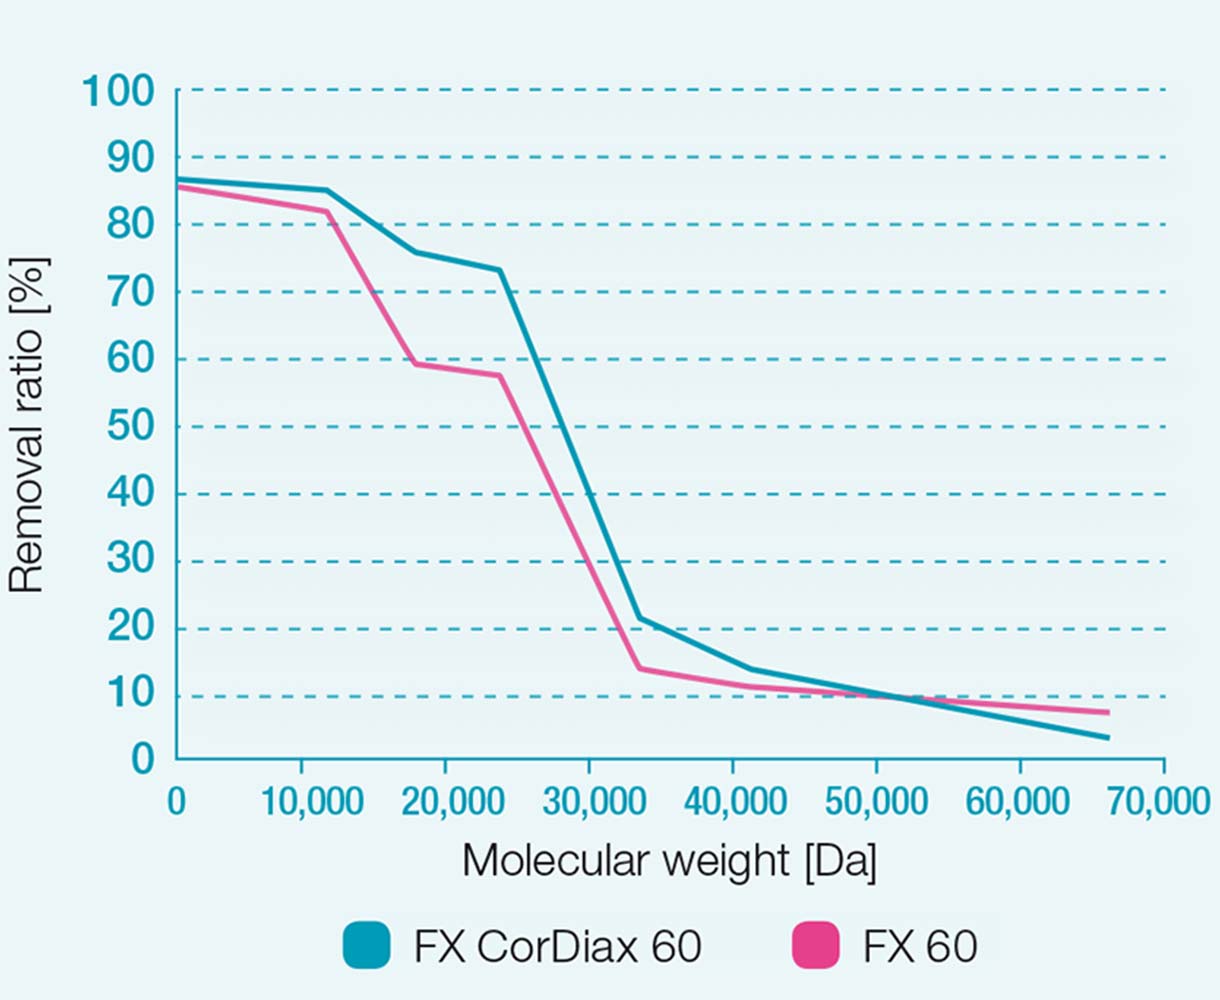 Az FX 60 és FX CorDiax 60 dializátorok eltávolítási arányai